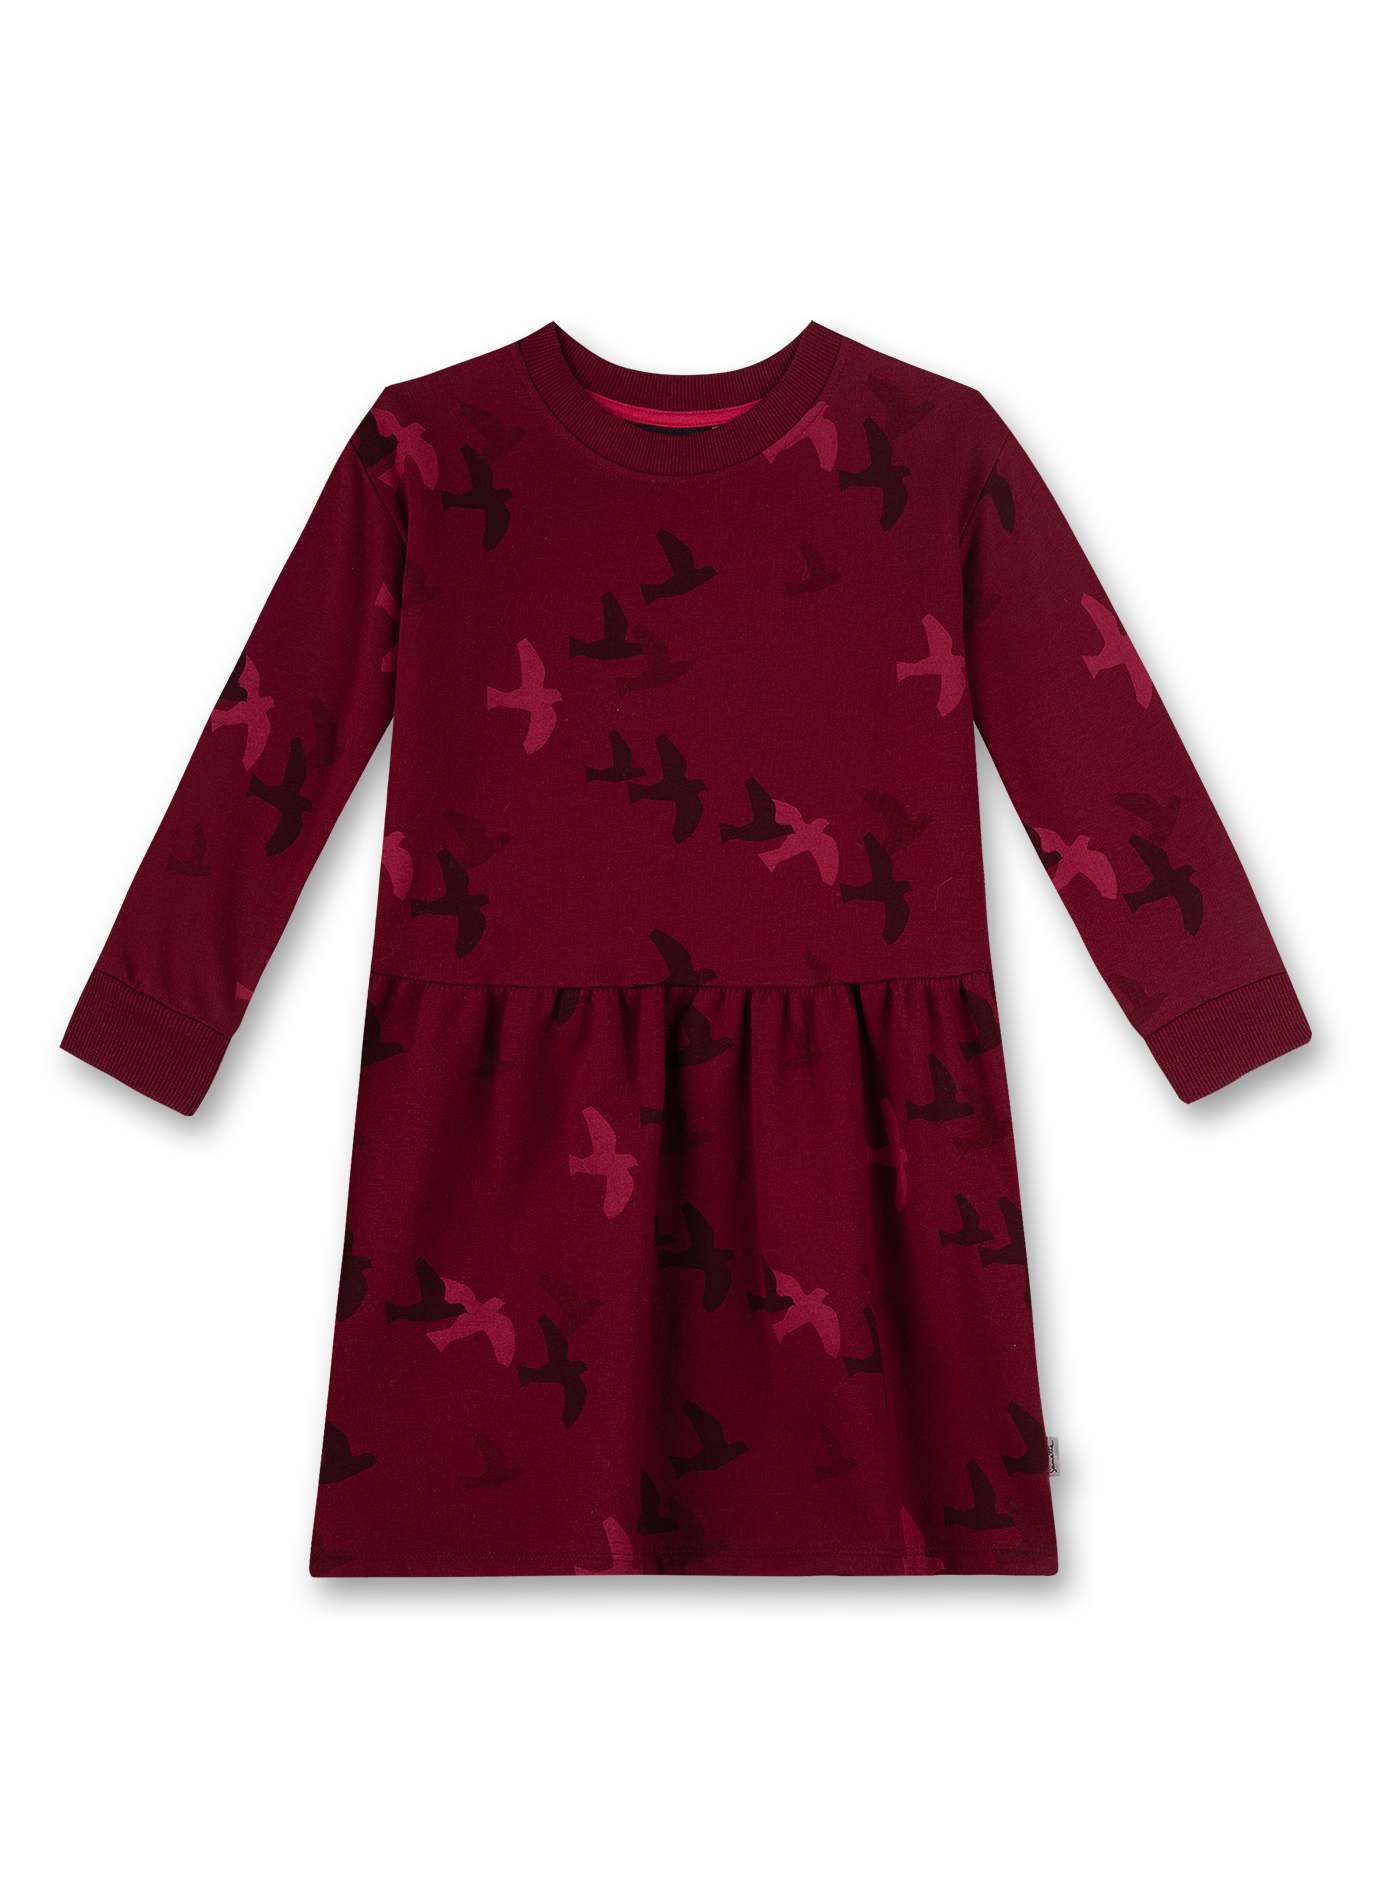 Mädchen-Kleid Rot Early Bird